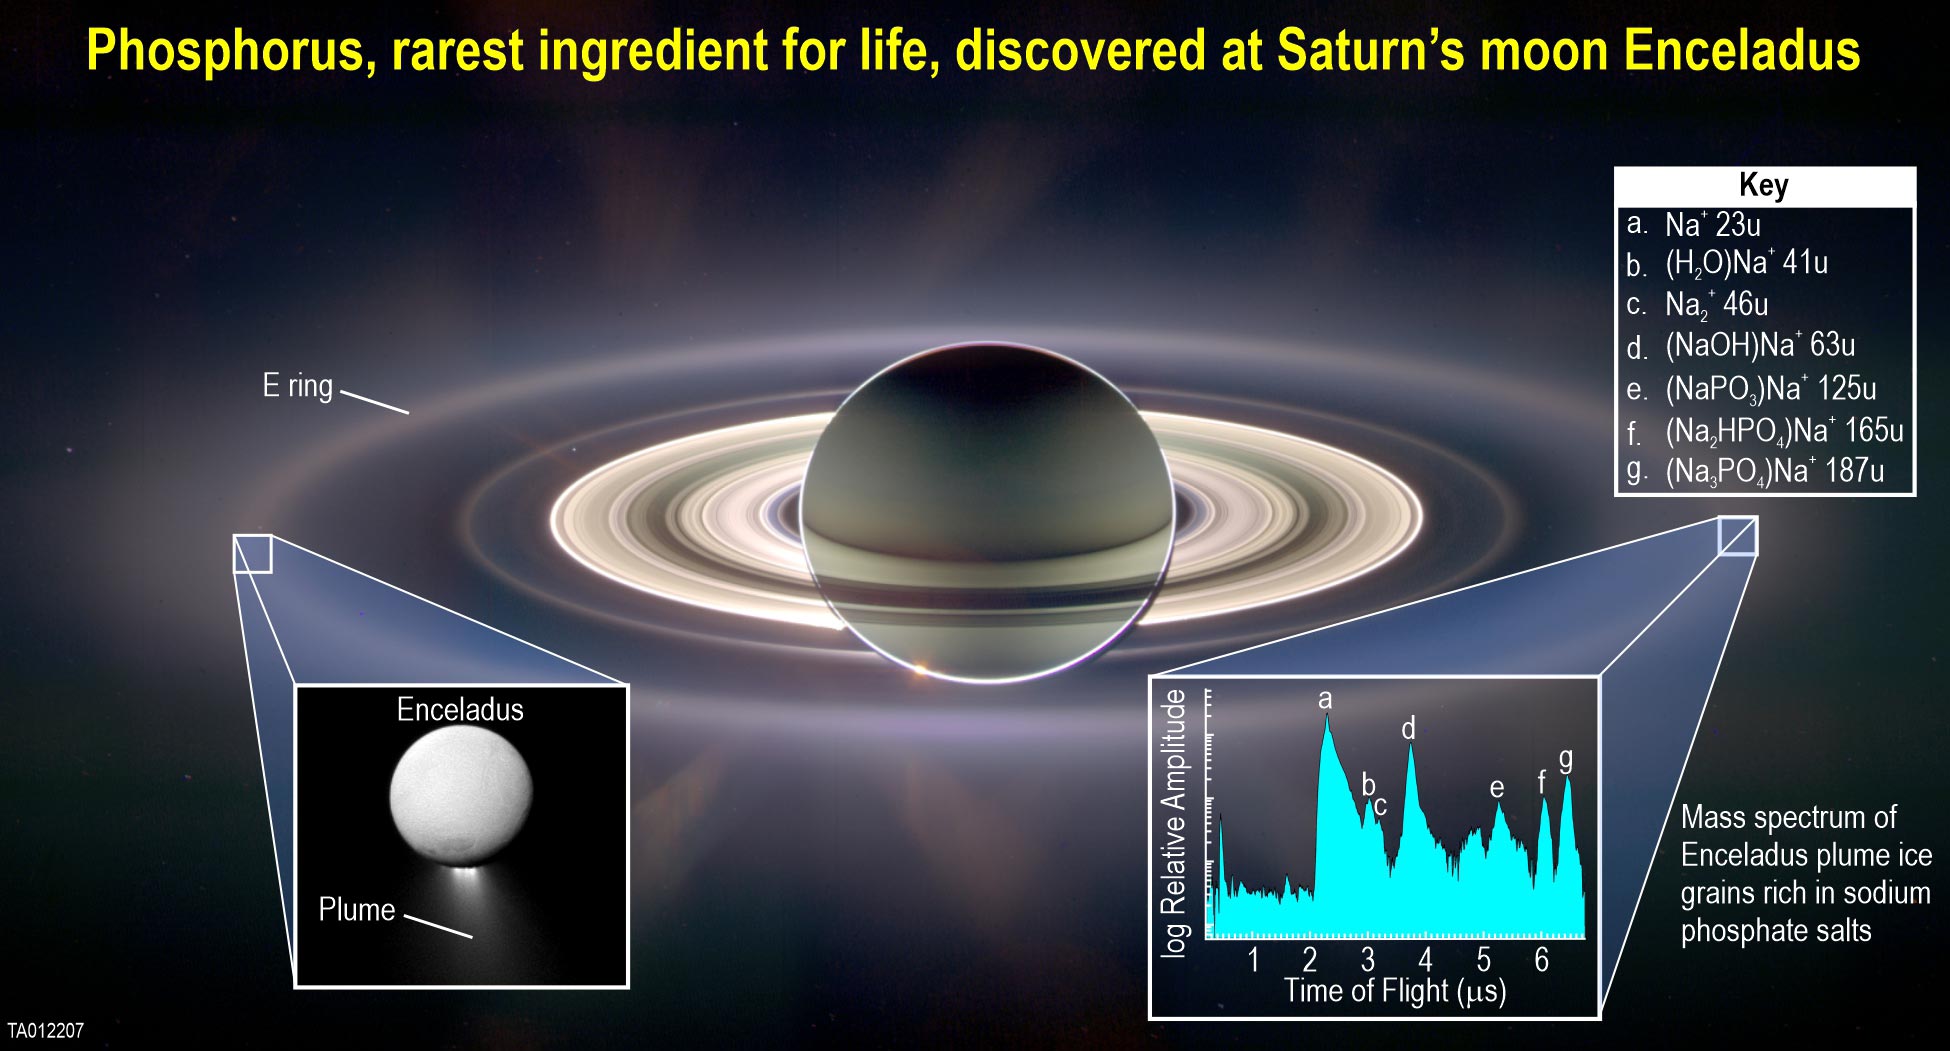 토성의 얼음 위성 엔셀라두스에서 생명의 필수 요소 발견